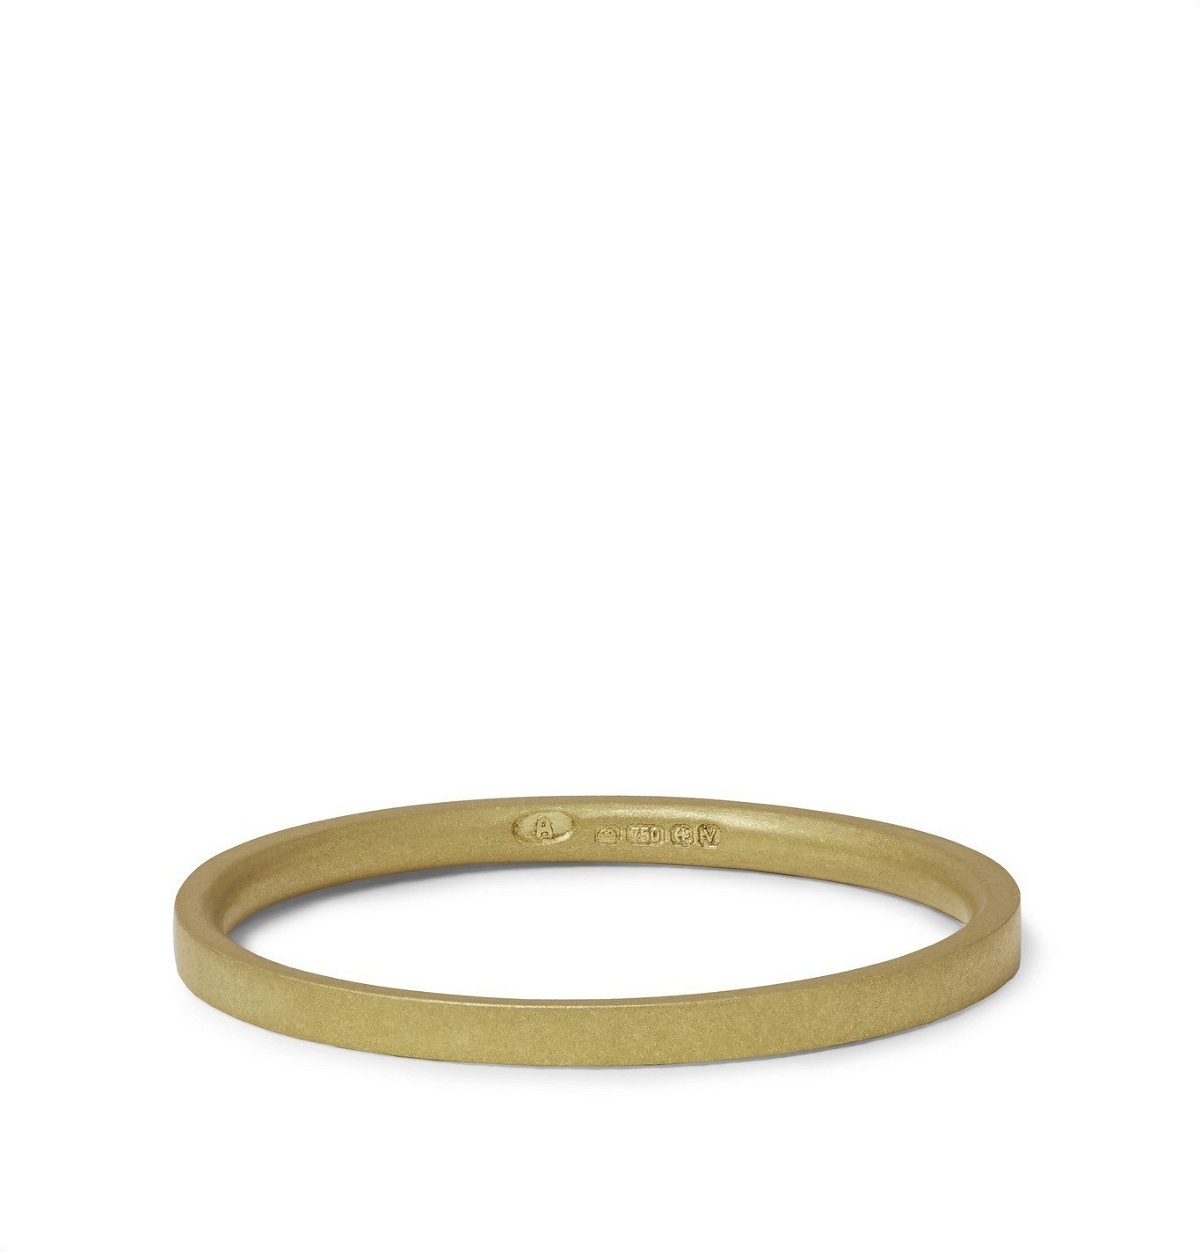 Photo: Alice Made This - M2 Bancroft Brushed 18-Karat Gold Ring - Gold